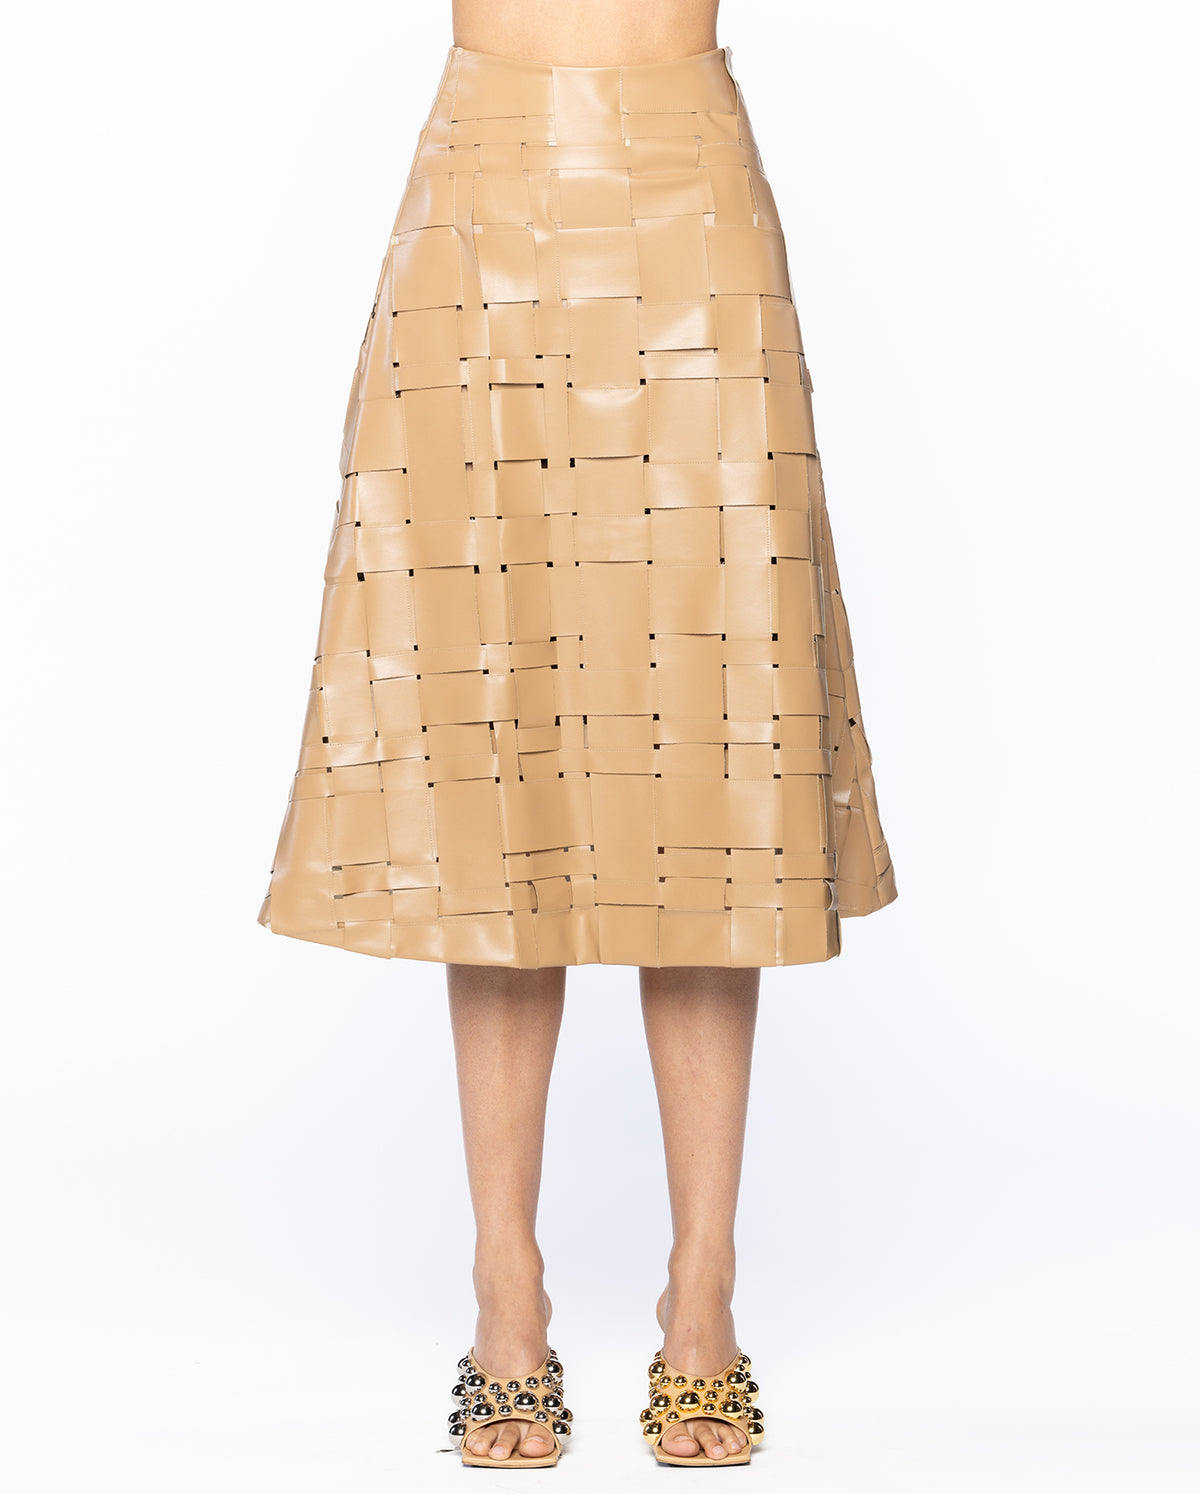 Weaved Eco Vegan Leather Skirt